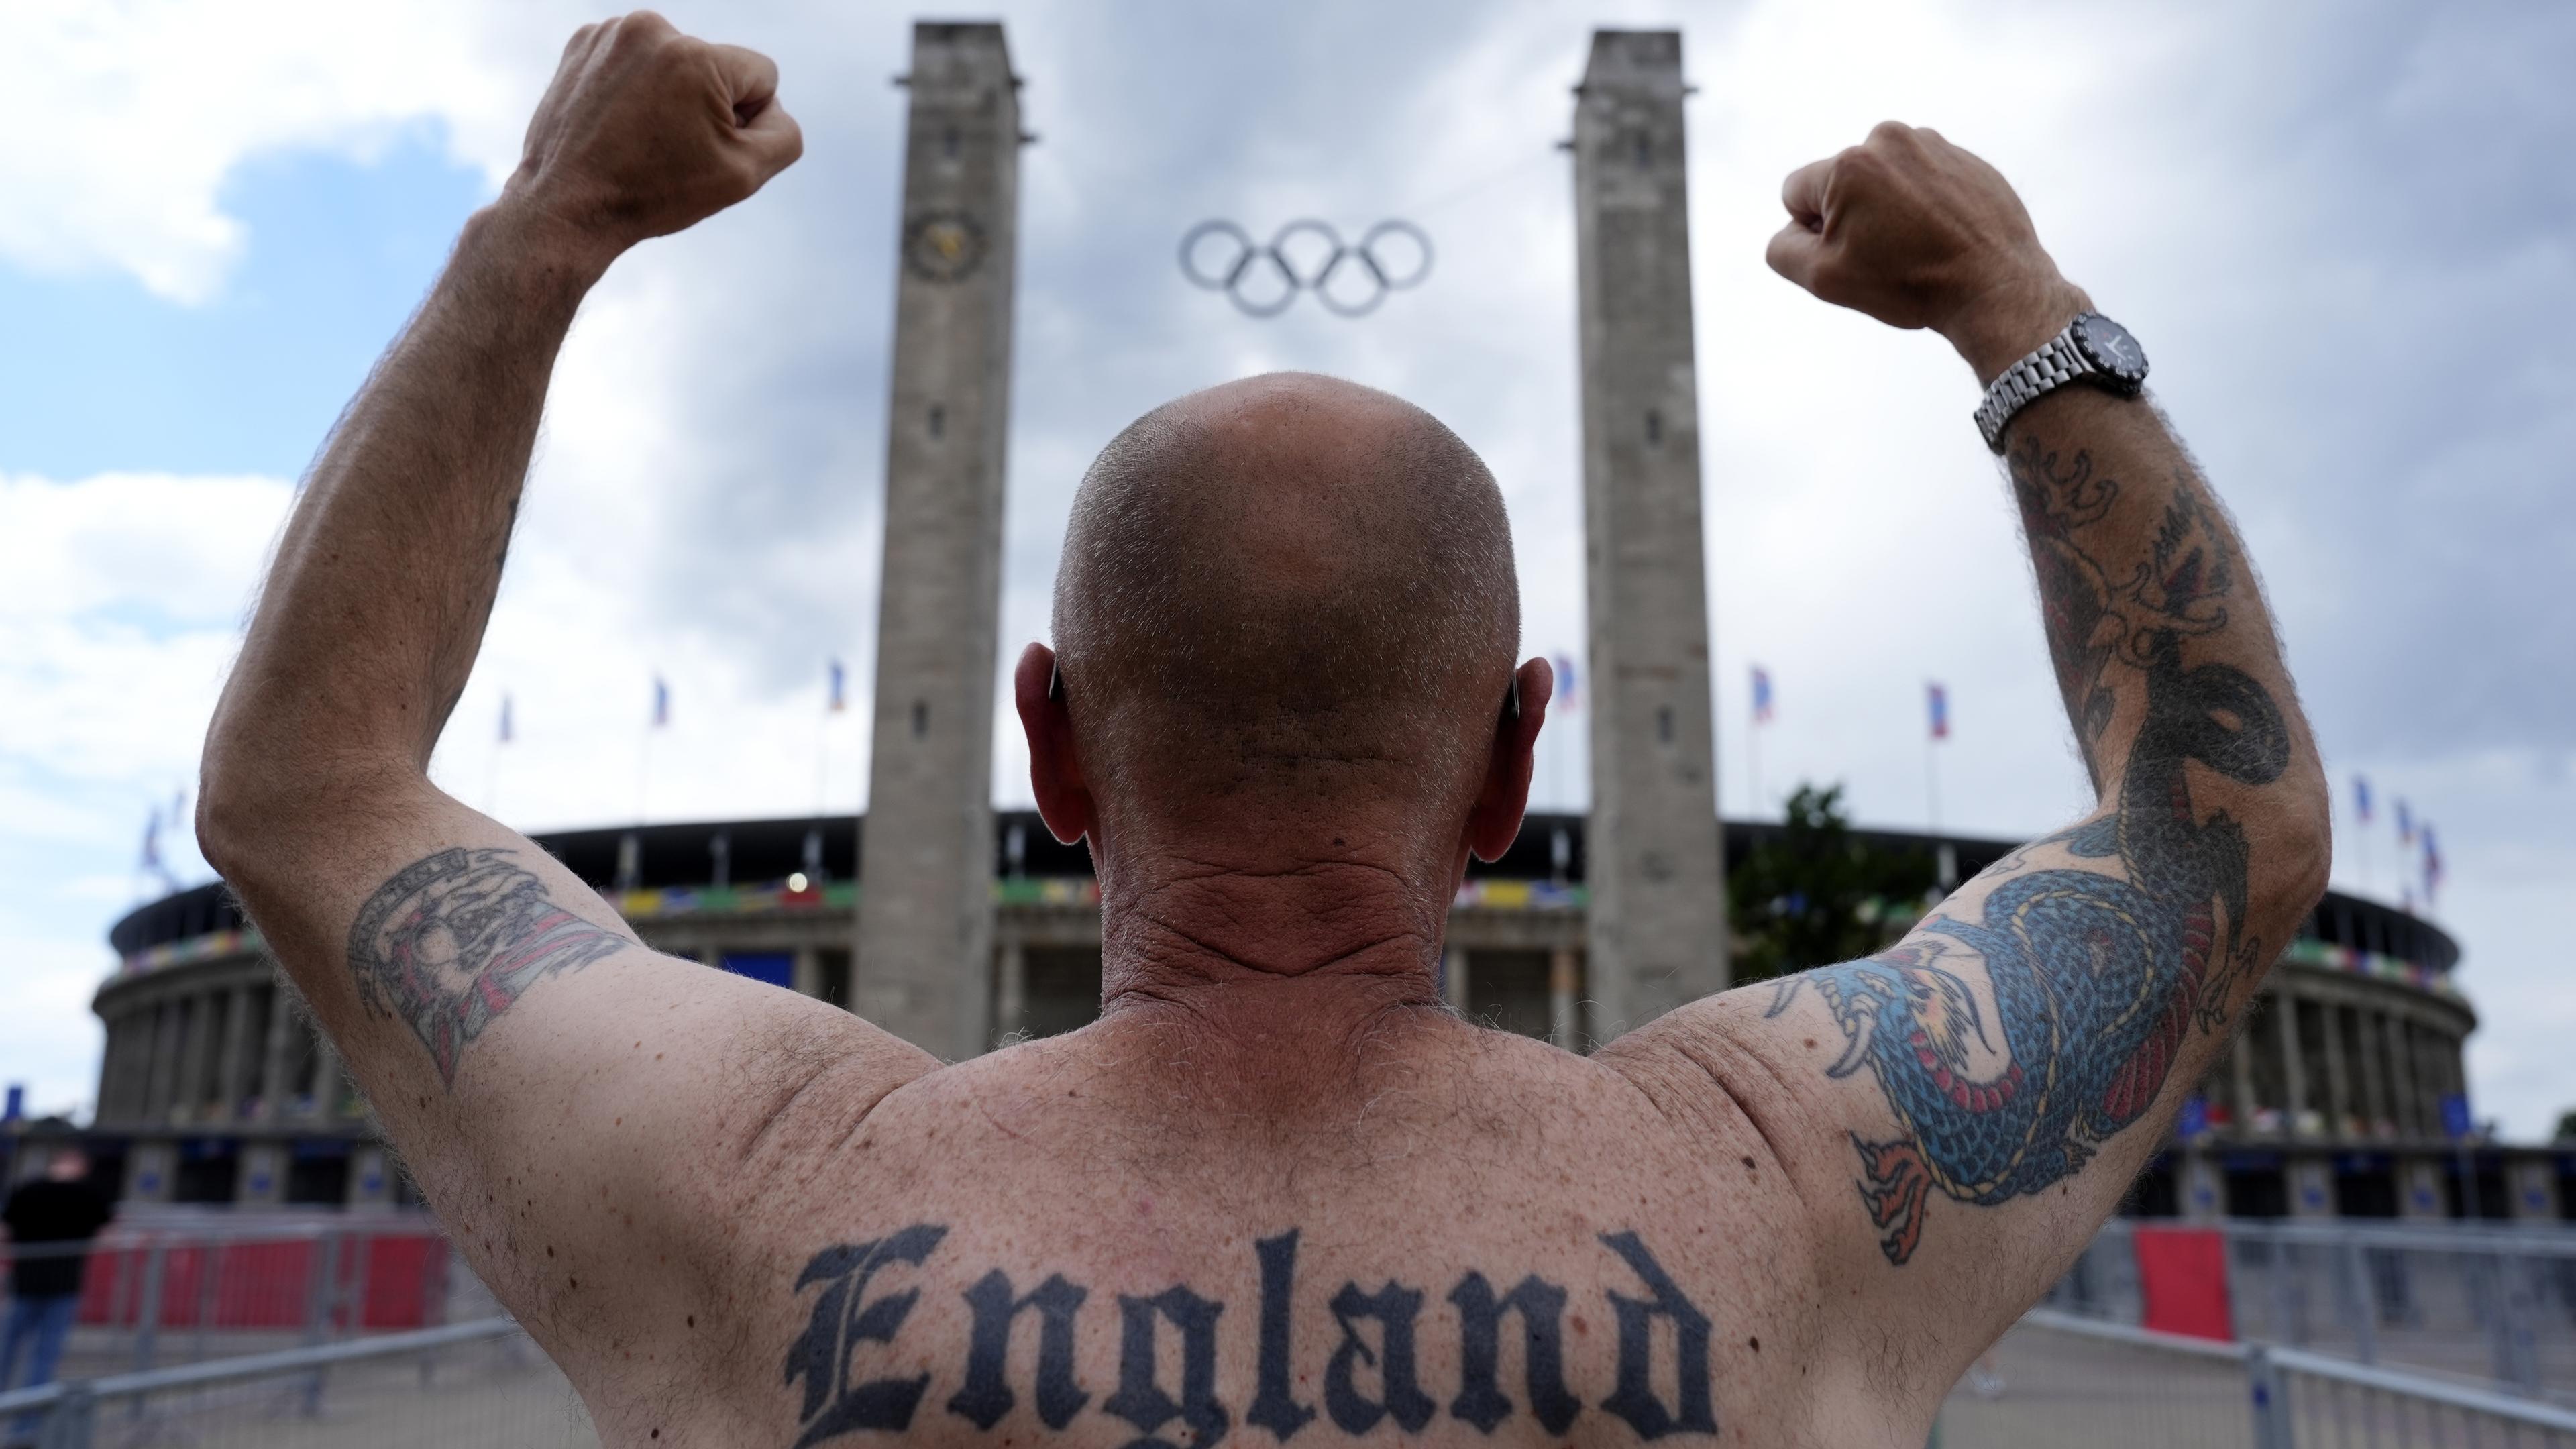 England-Fan Jason Cook gestikuliert vor dem Olympiastadion, auf seinem Rücken sieht man ein "England"-Tattoo.